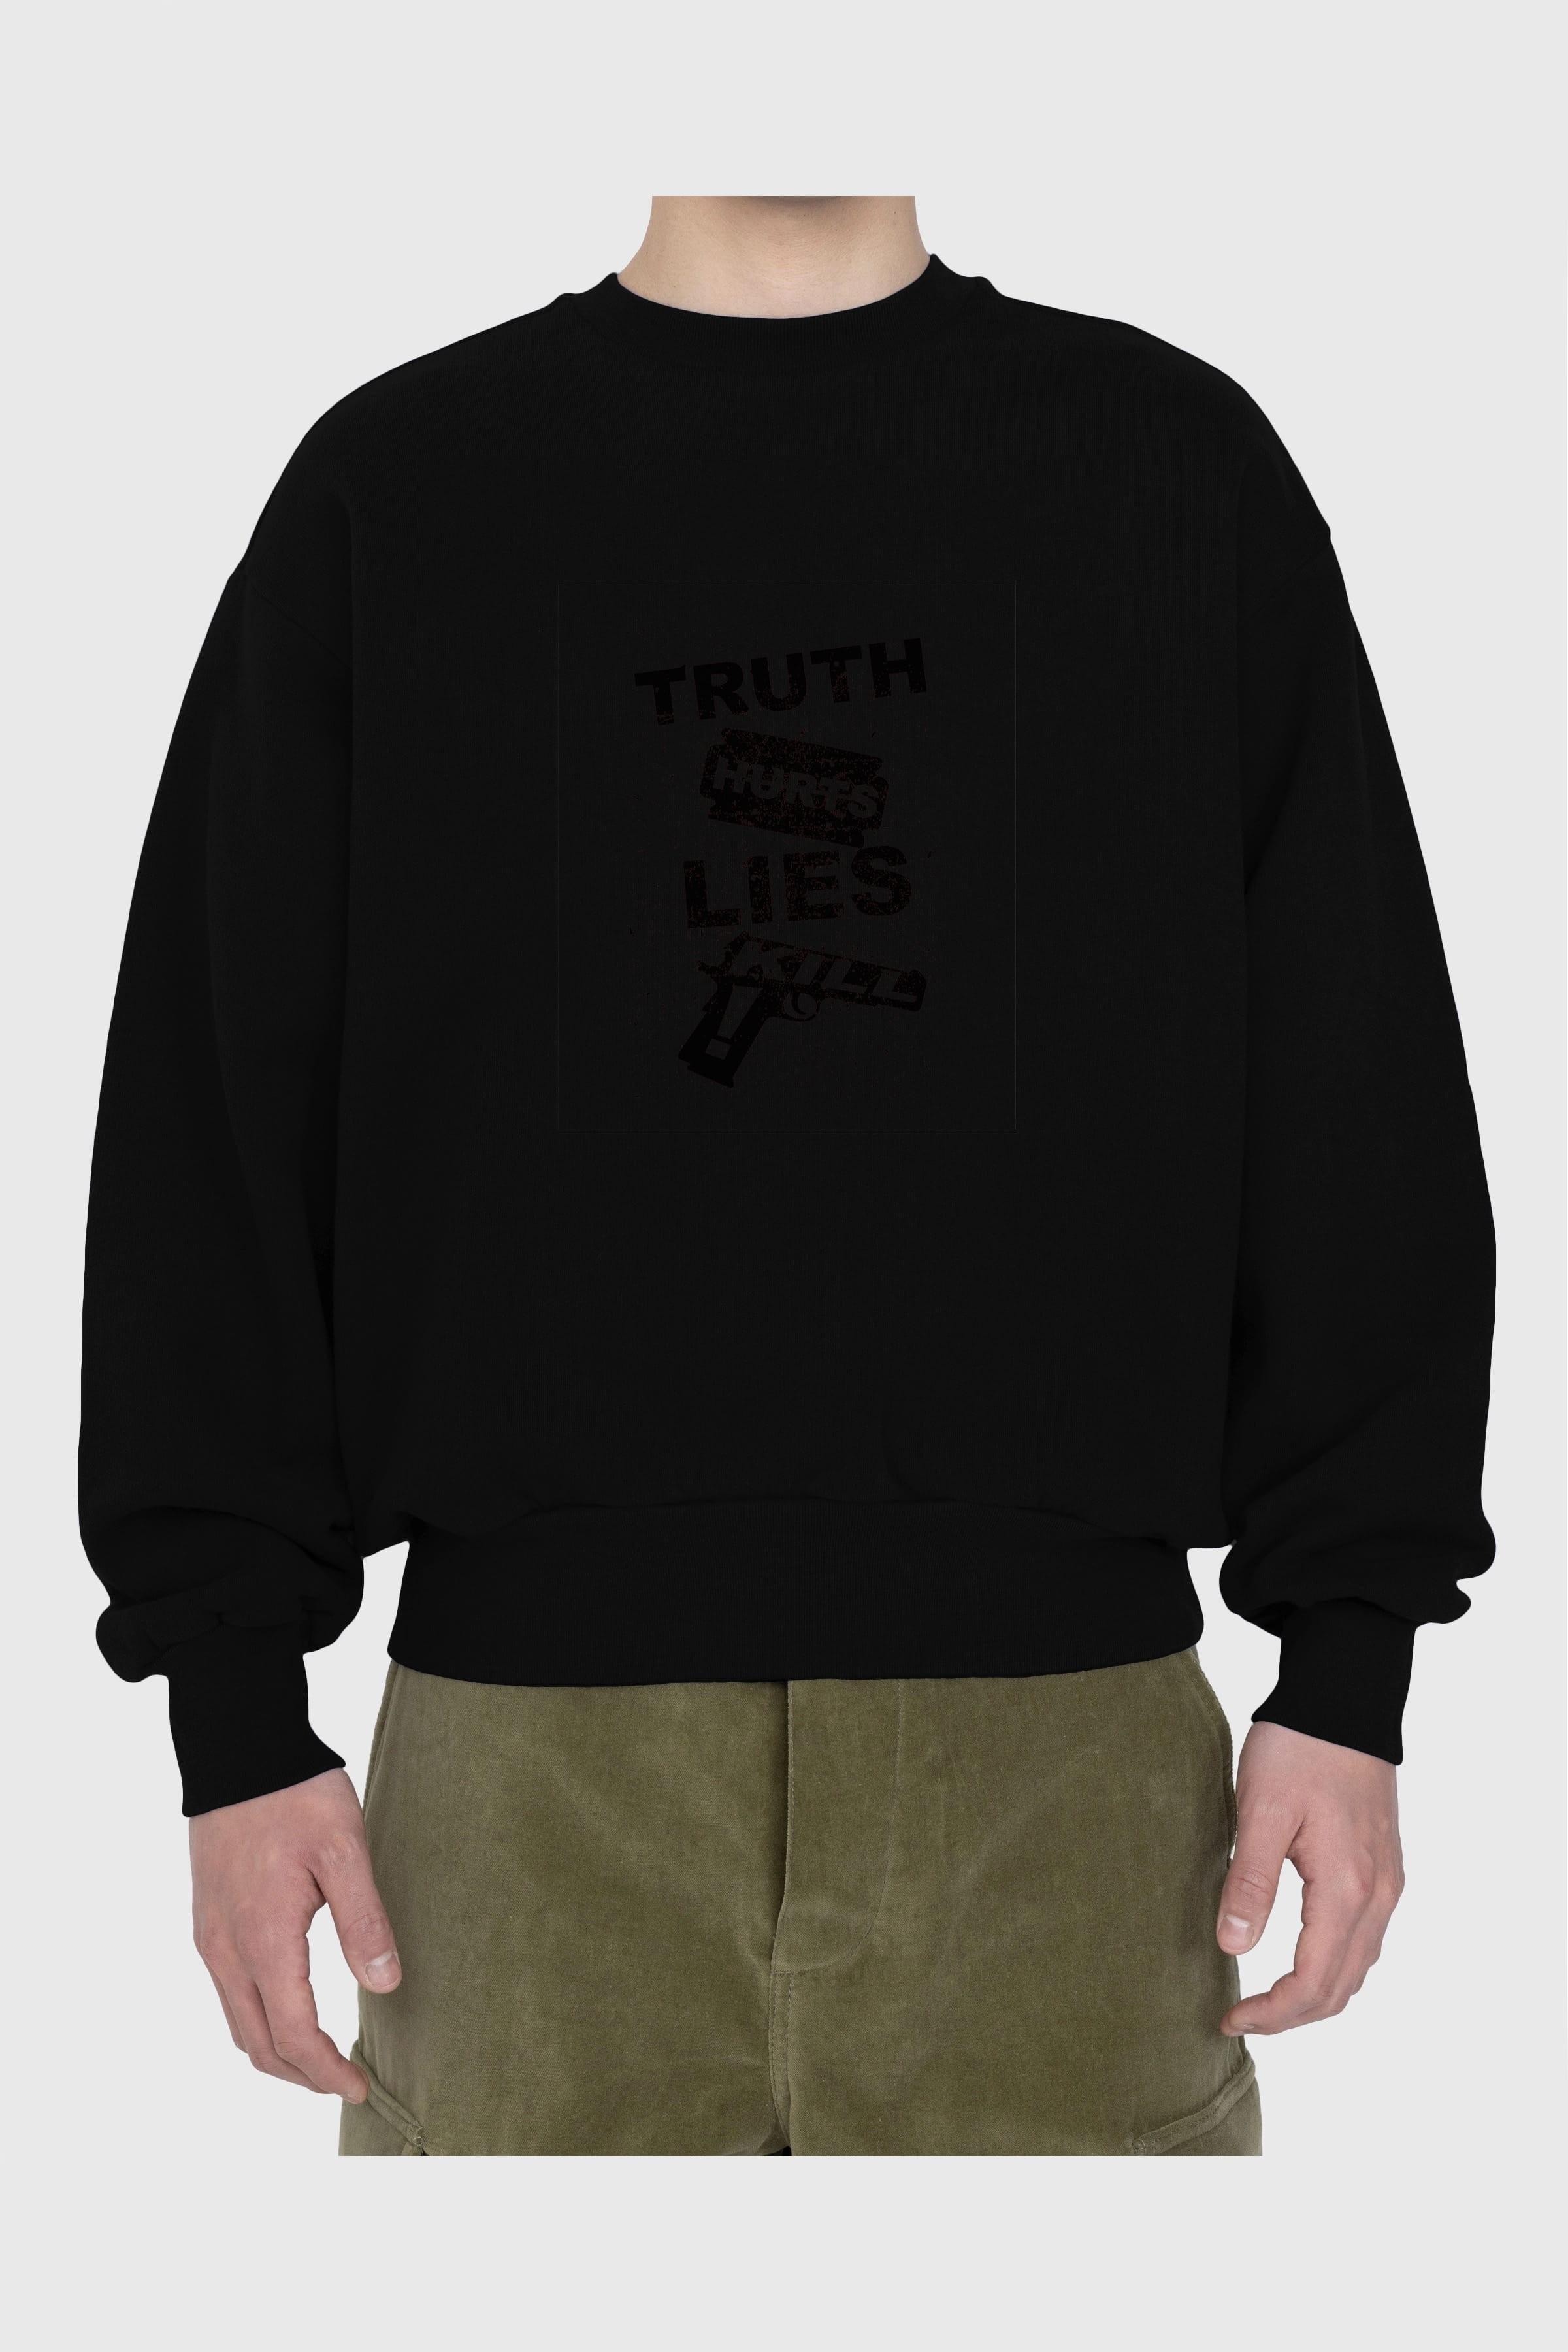 Truth Hurts Ön Baskılı Oversize Sweatshirt Erkek Kadın Unisex